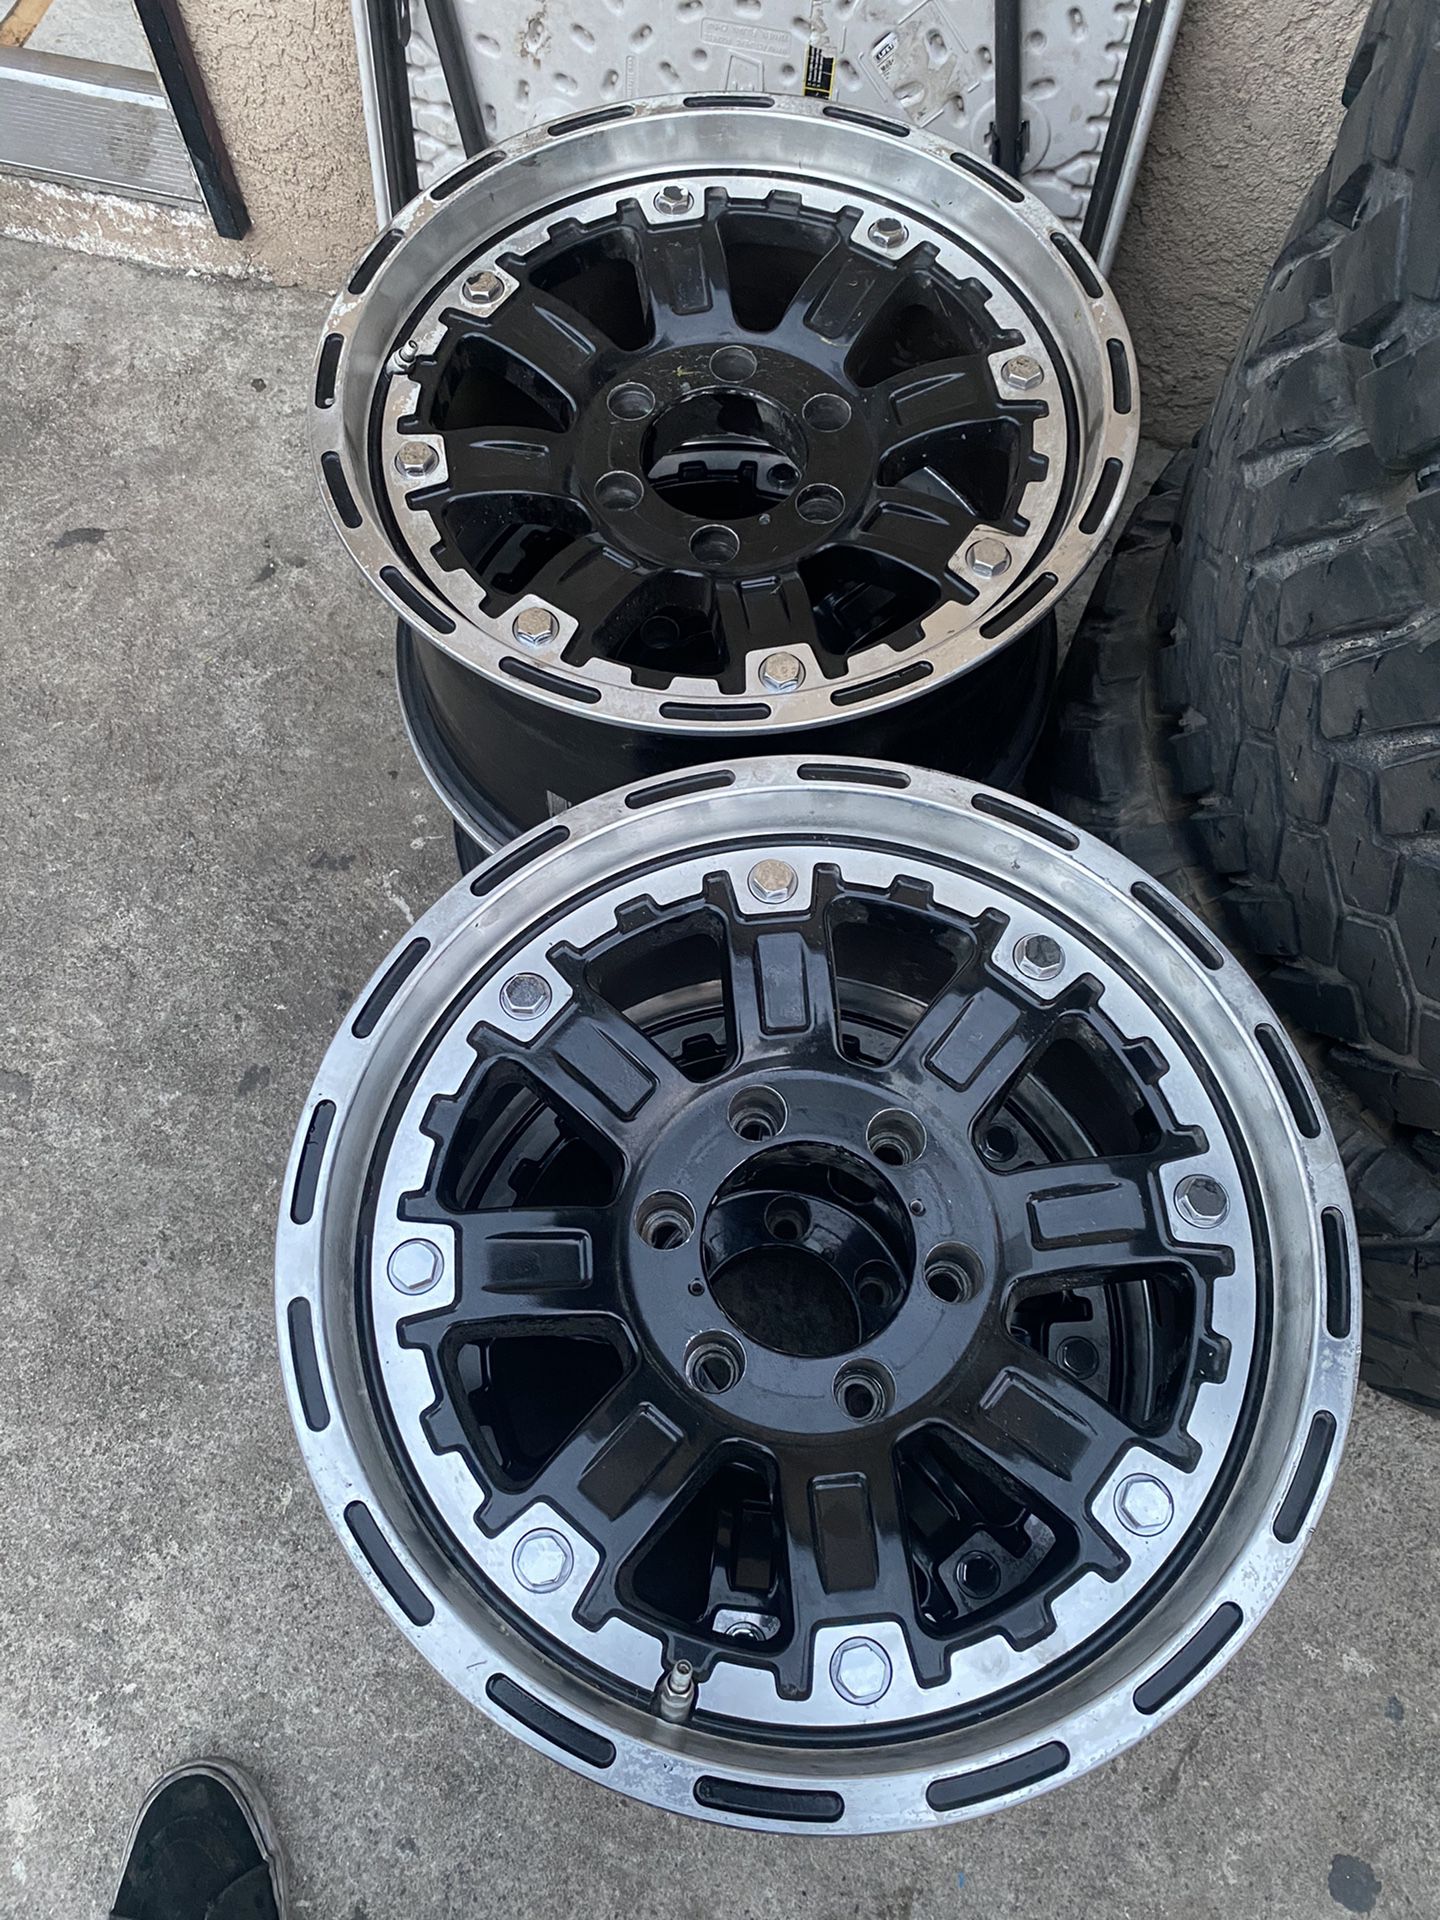 17 inch American Outlaw wheels - 6 lug GM or Toyota